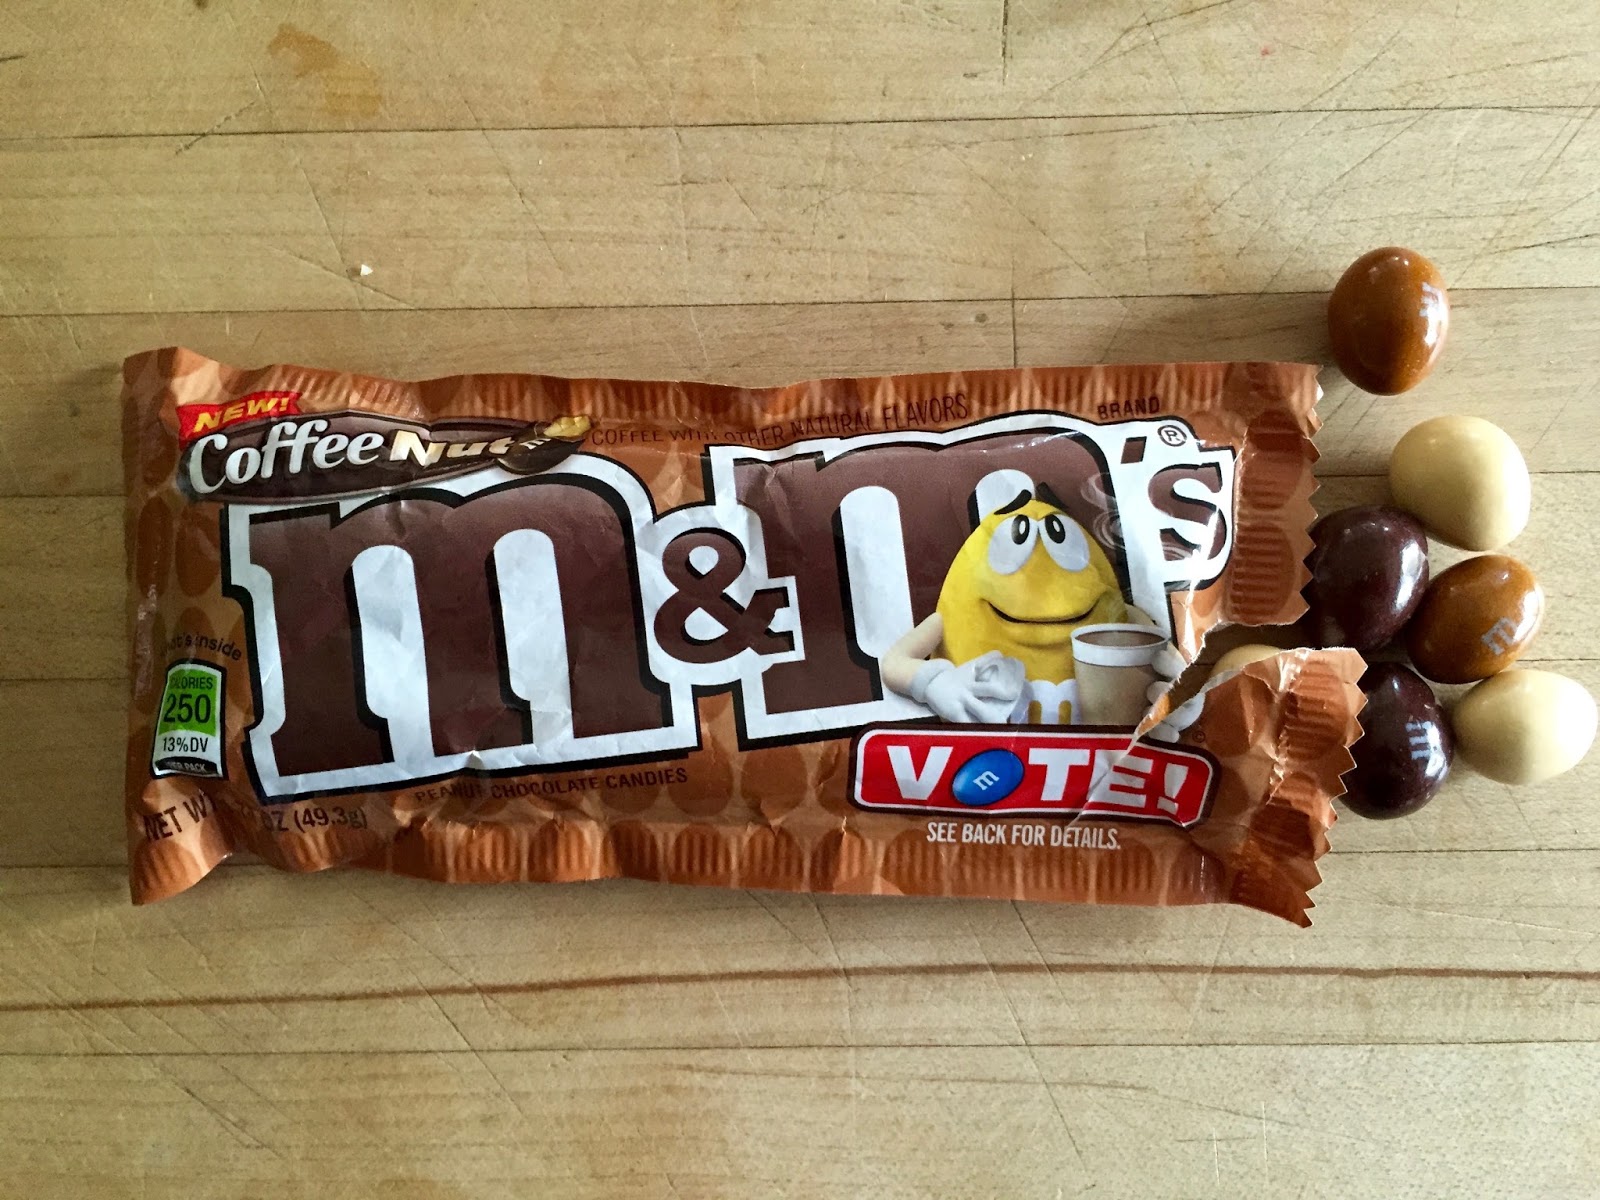 M&M'S ask fans to vote for new peanut M&M's flavor, 2016-03-30